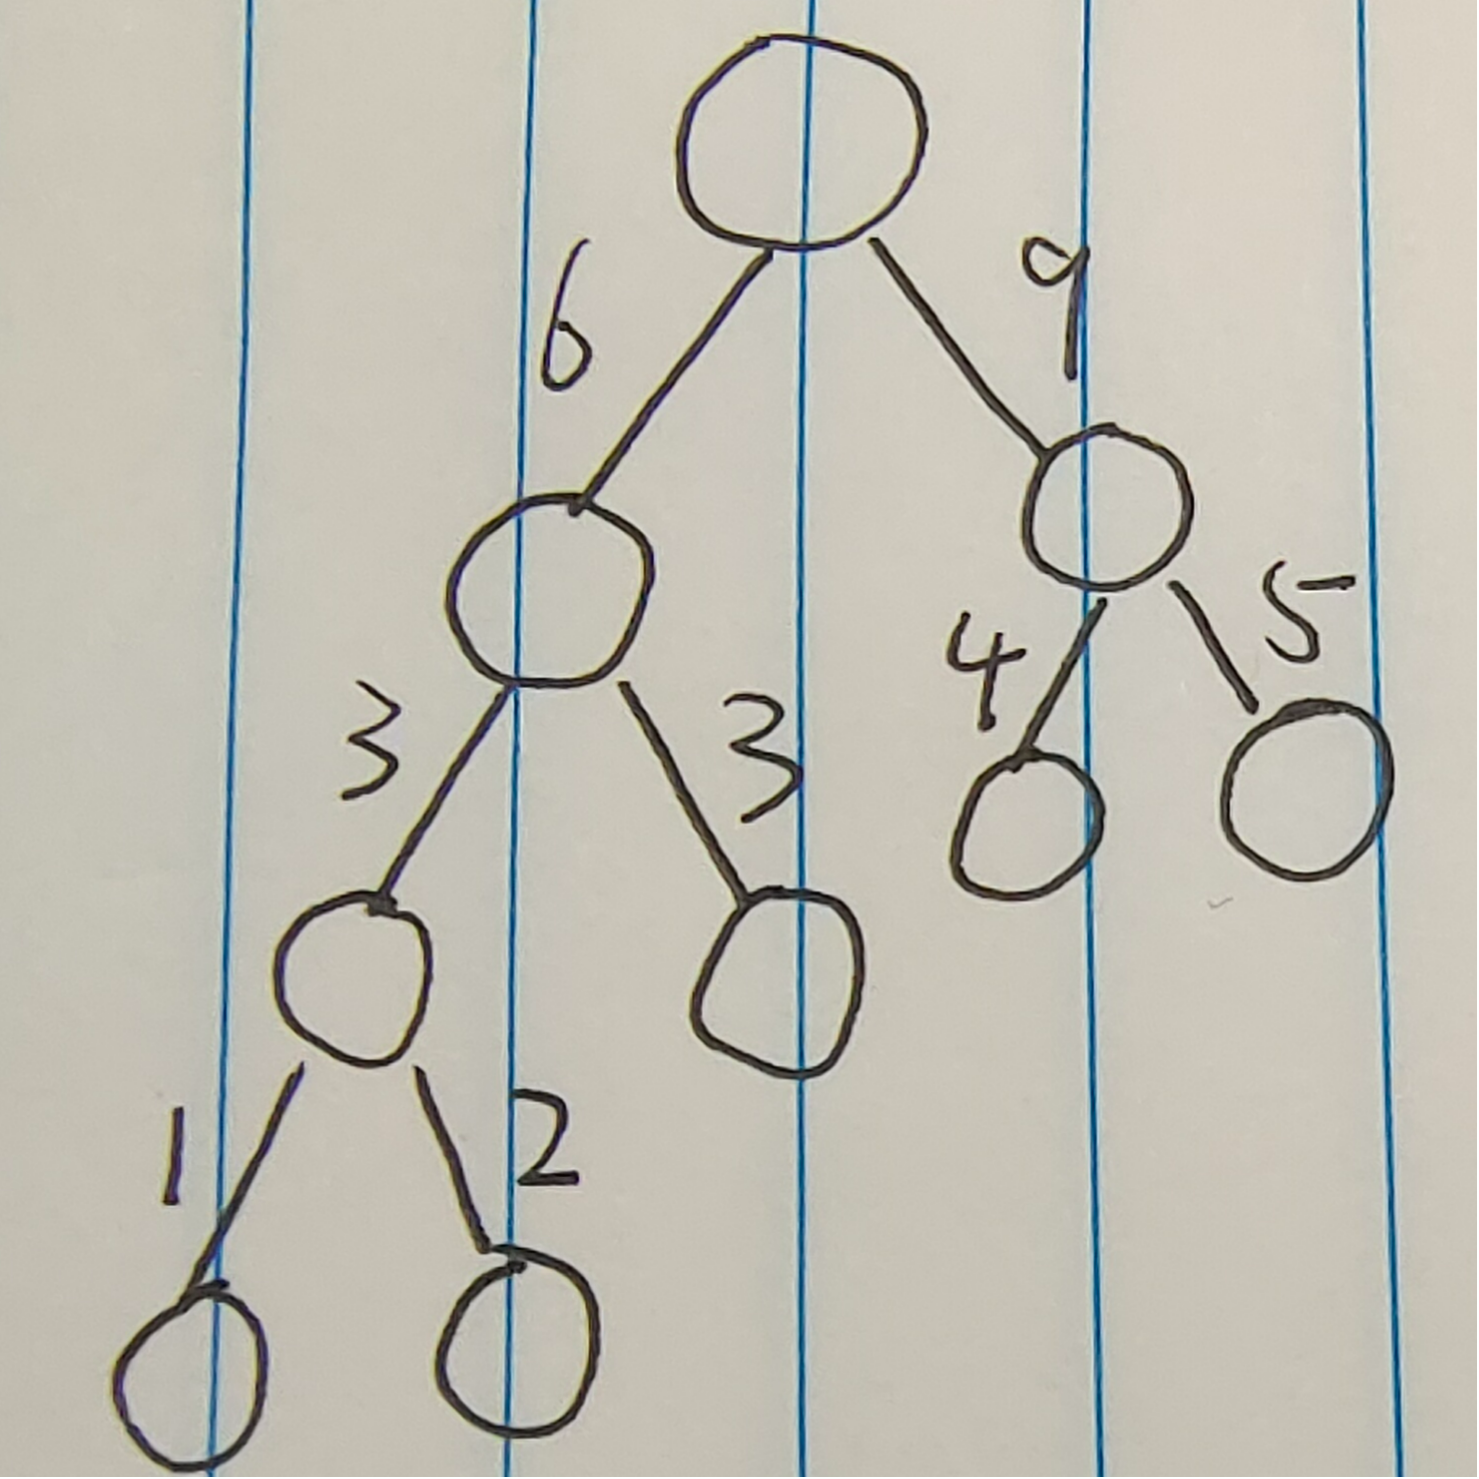 哈夫曼树编码数据结构课程设计答辩ppt_数据结构课程设计哈夫曼编码器